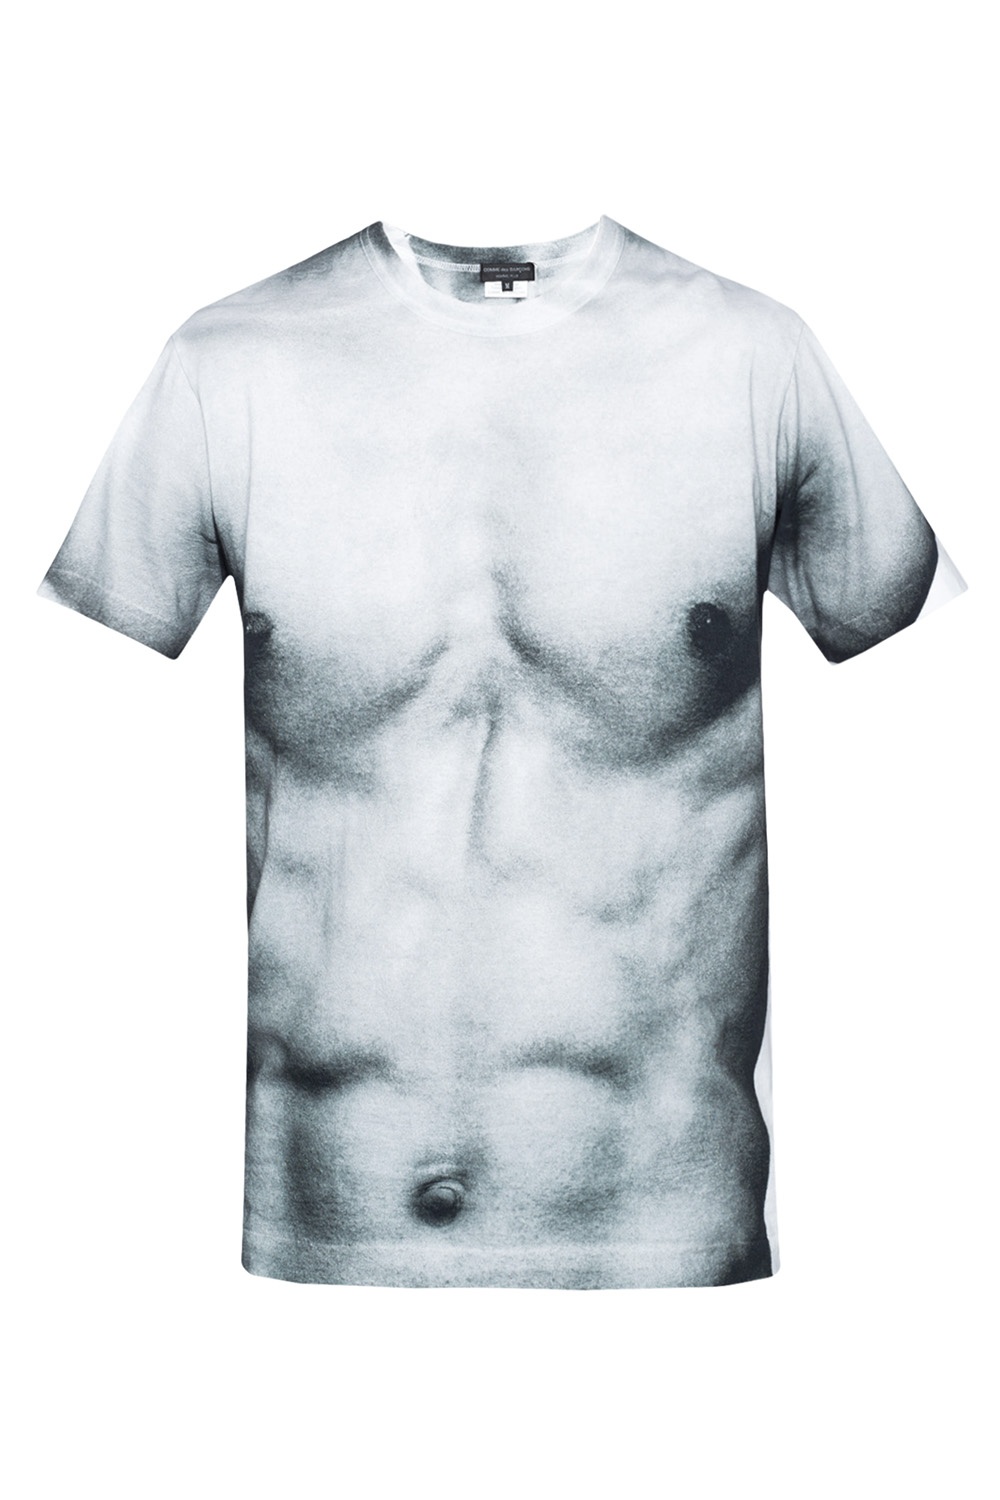 Comme des Garçons Homme Plus Printed T-shirt | Men's Clothing | Vitkac